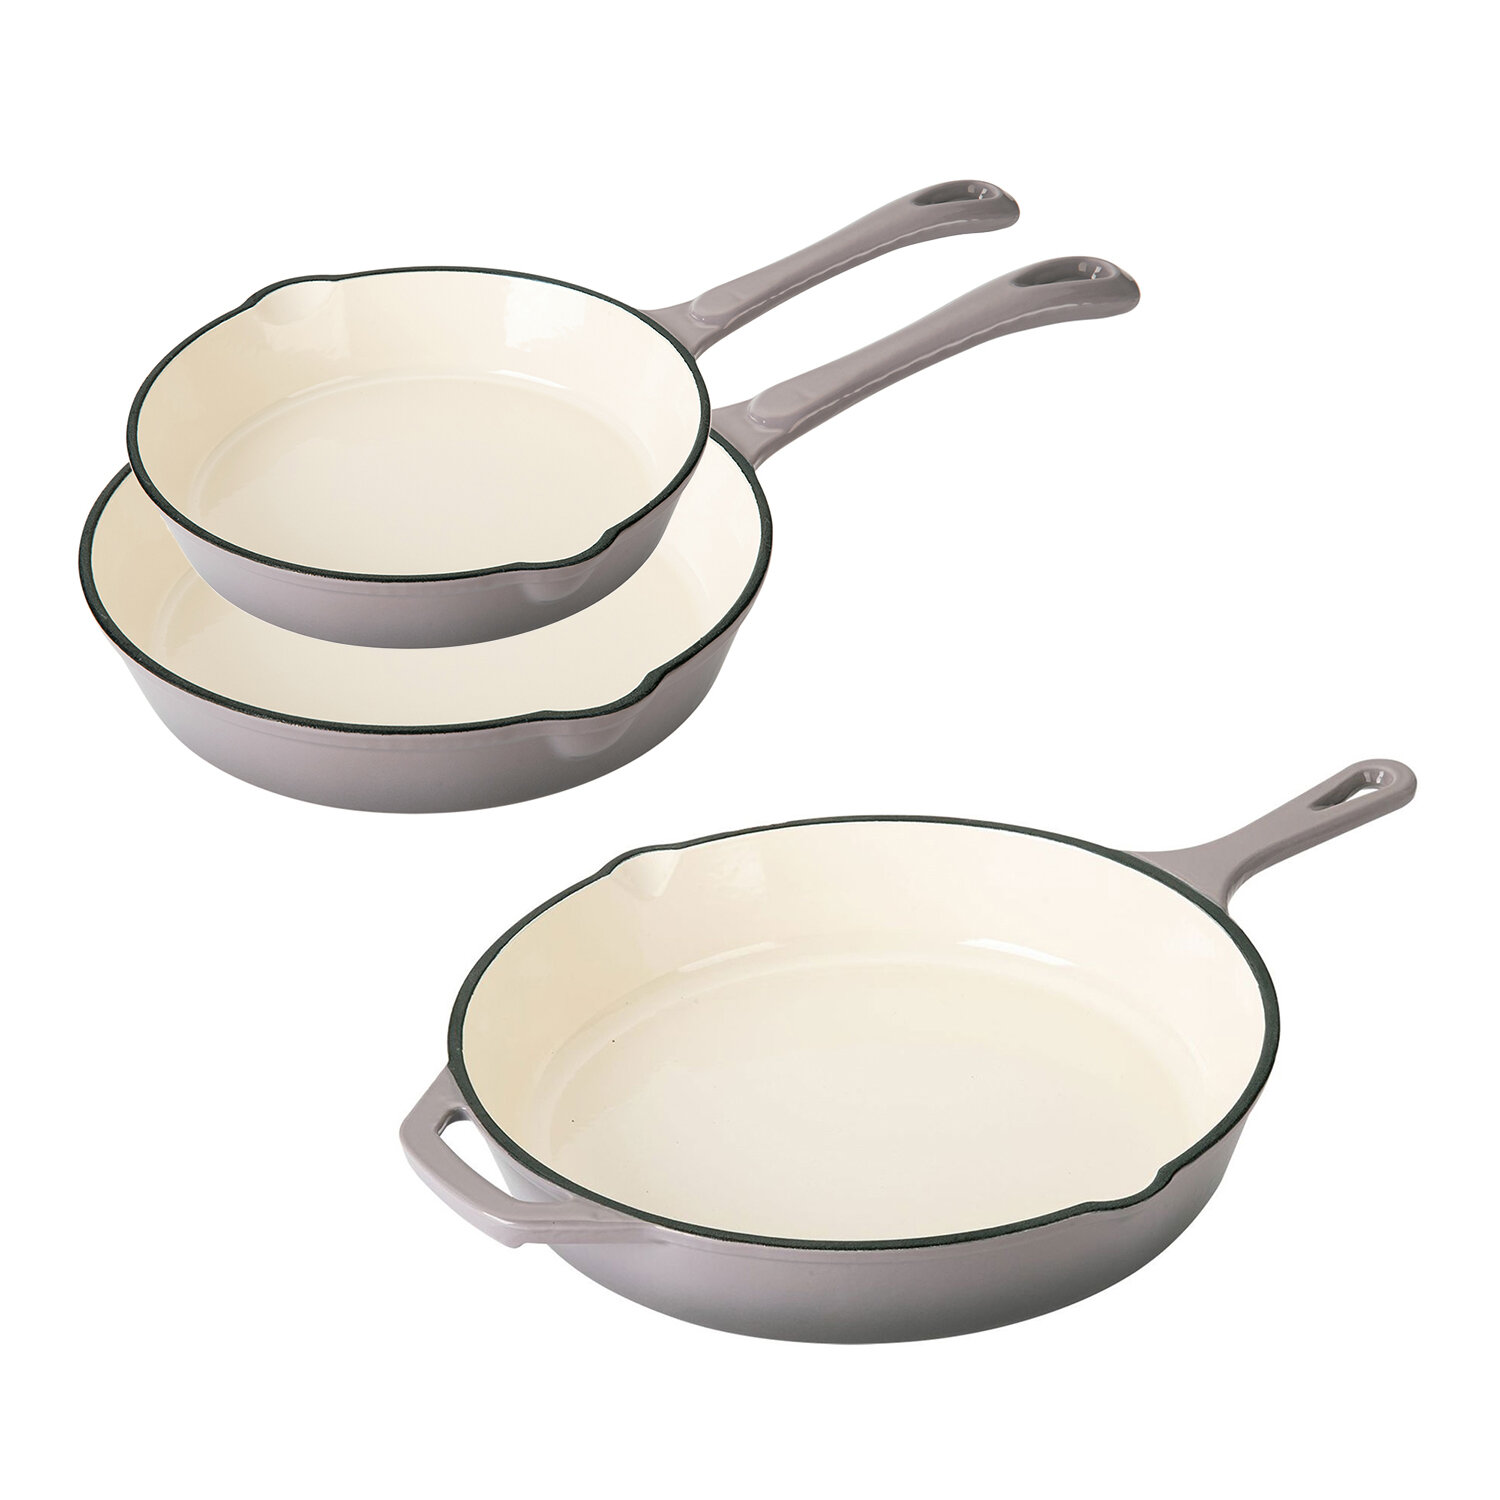 https://assets.wfcdn.com/im/09857154/compr-r85/1857/185735184/3-piece-non-stick-enameled-cast-iron-cookware-set.jpg